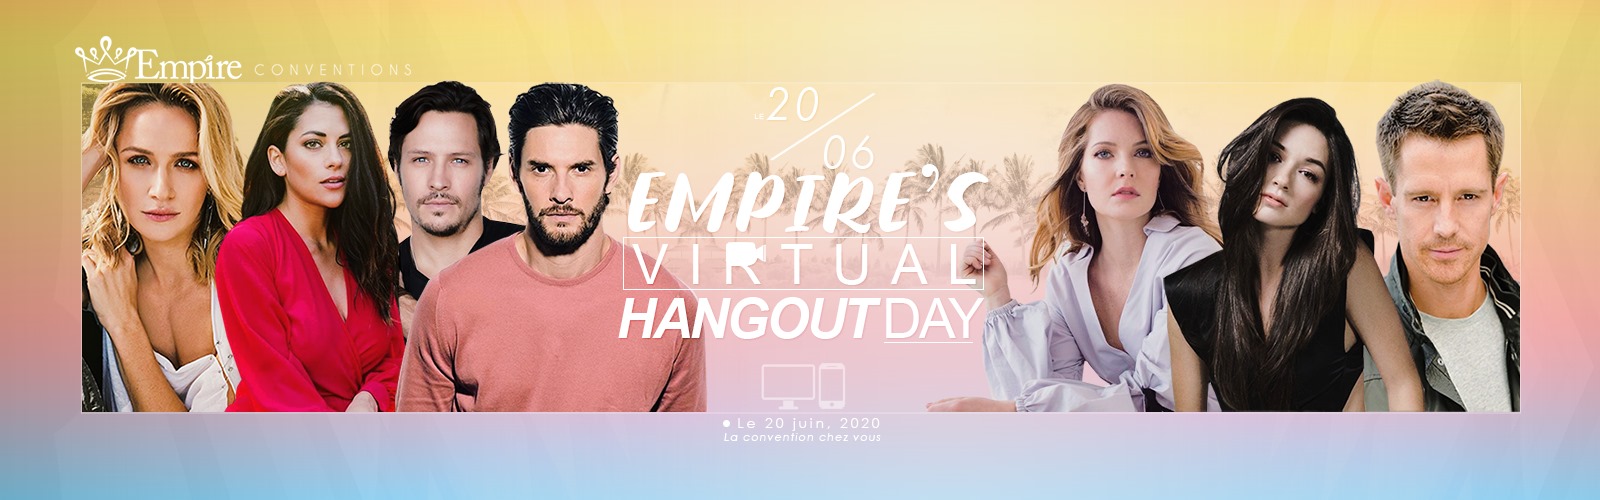 Empire’s Virtual Hangout Day